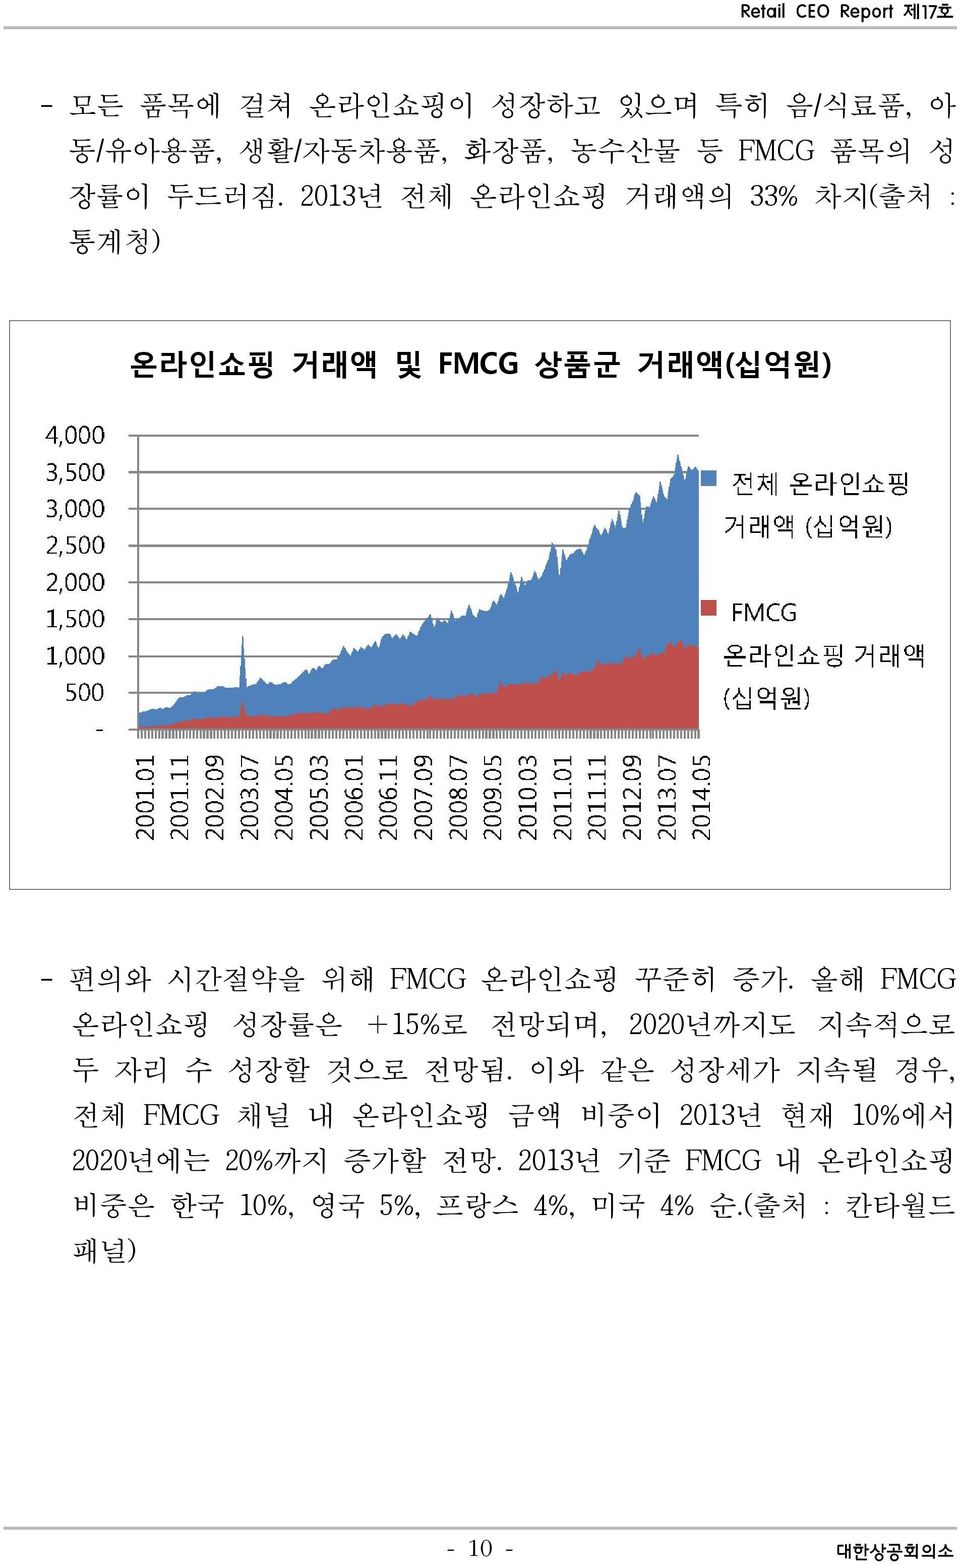 올해 FMCG 온라인쇼핑 성장률은 +15%로 전망되며, 2020년까지도 지속적으로 두 자리 수 성장할 것으로 전망됨.